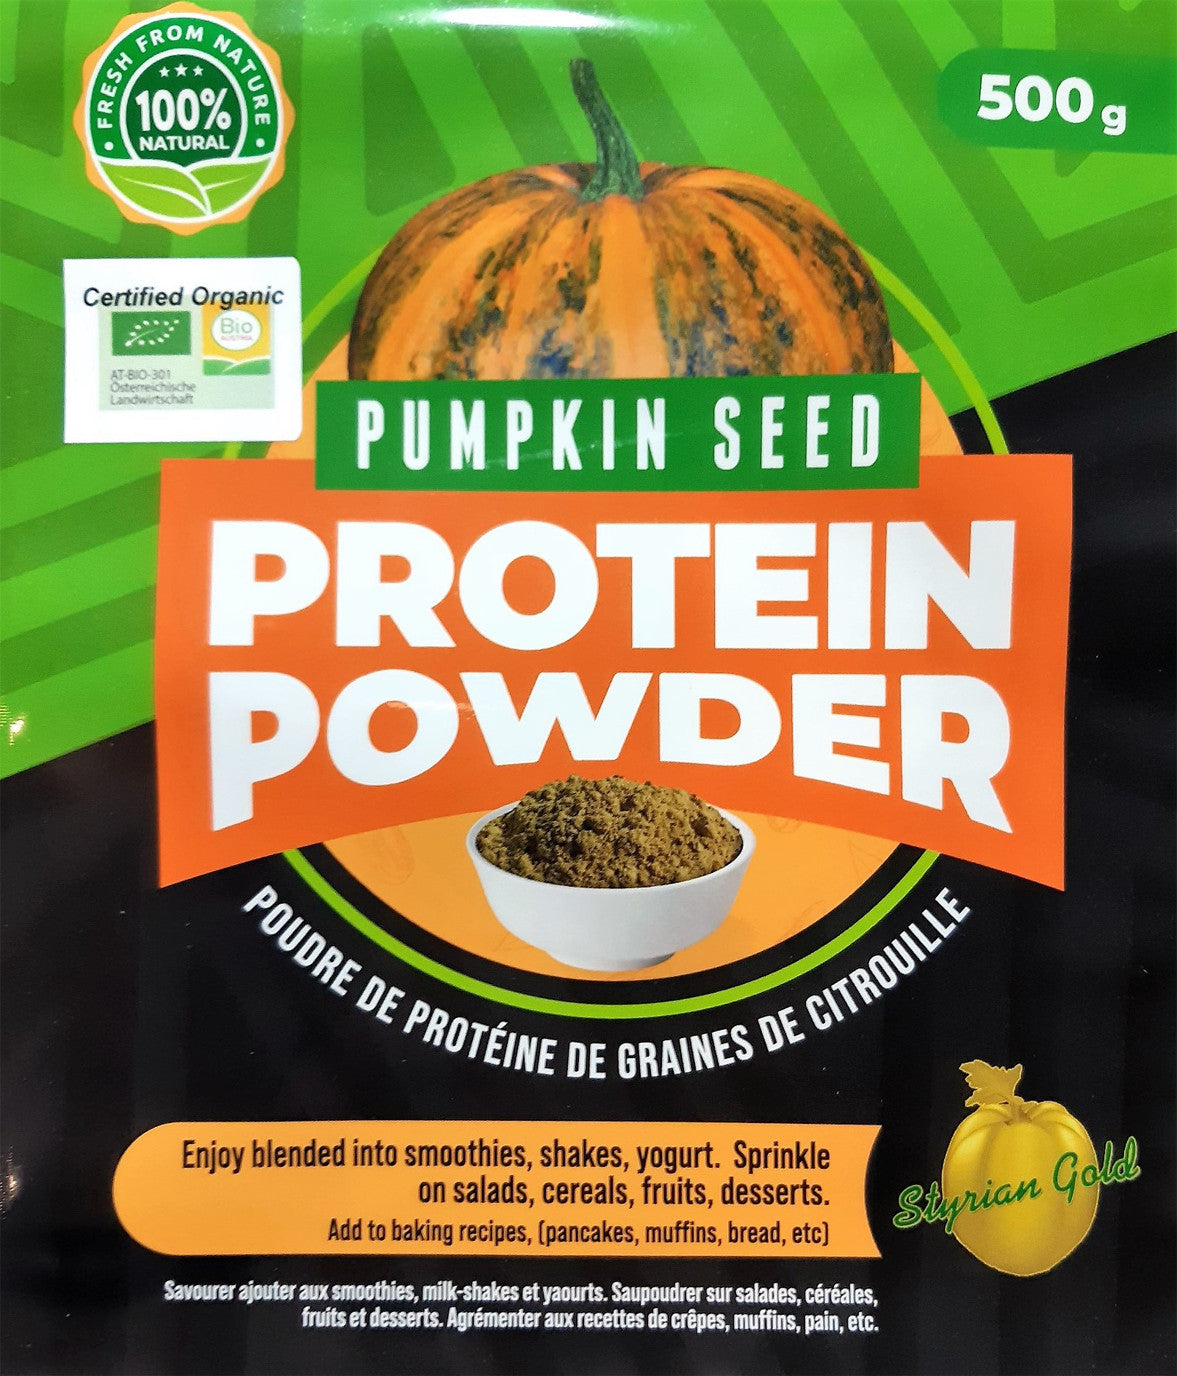 Styrian Gold Pumpkin Seed Protein Powder 500g